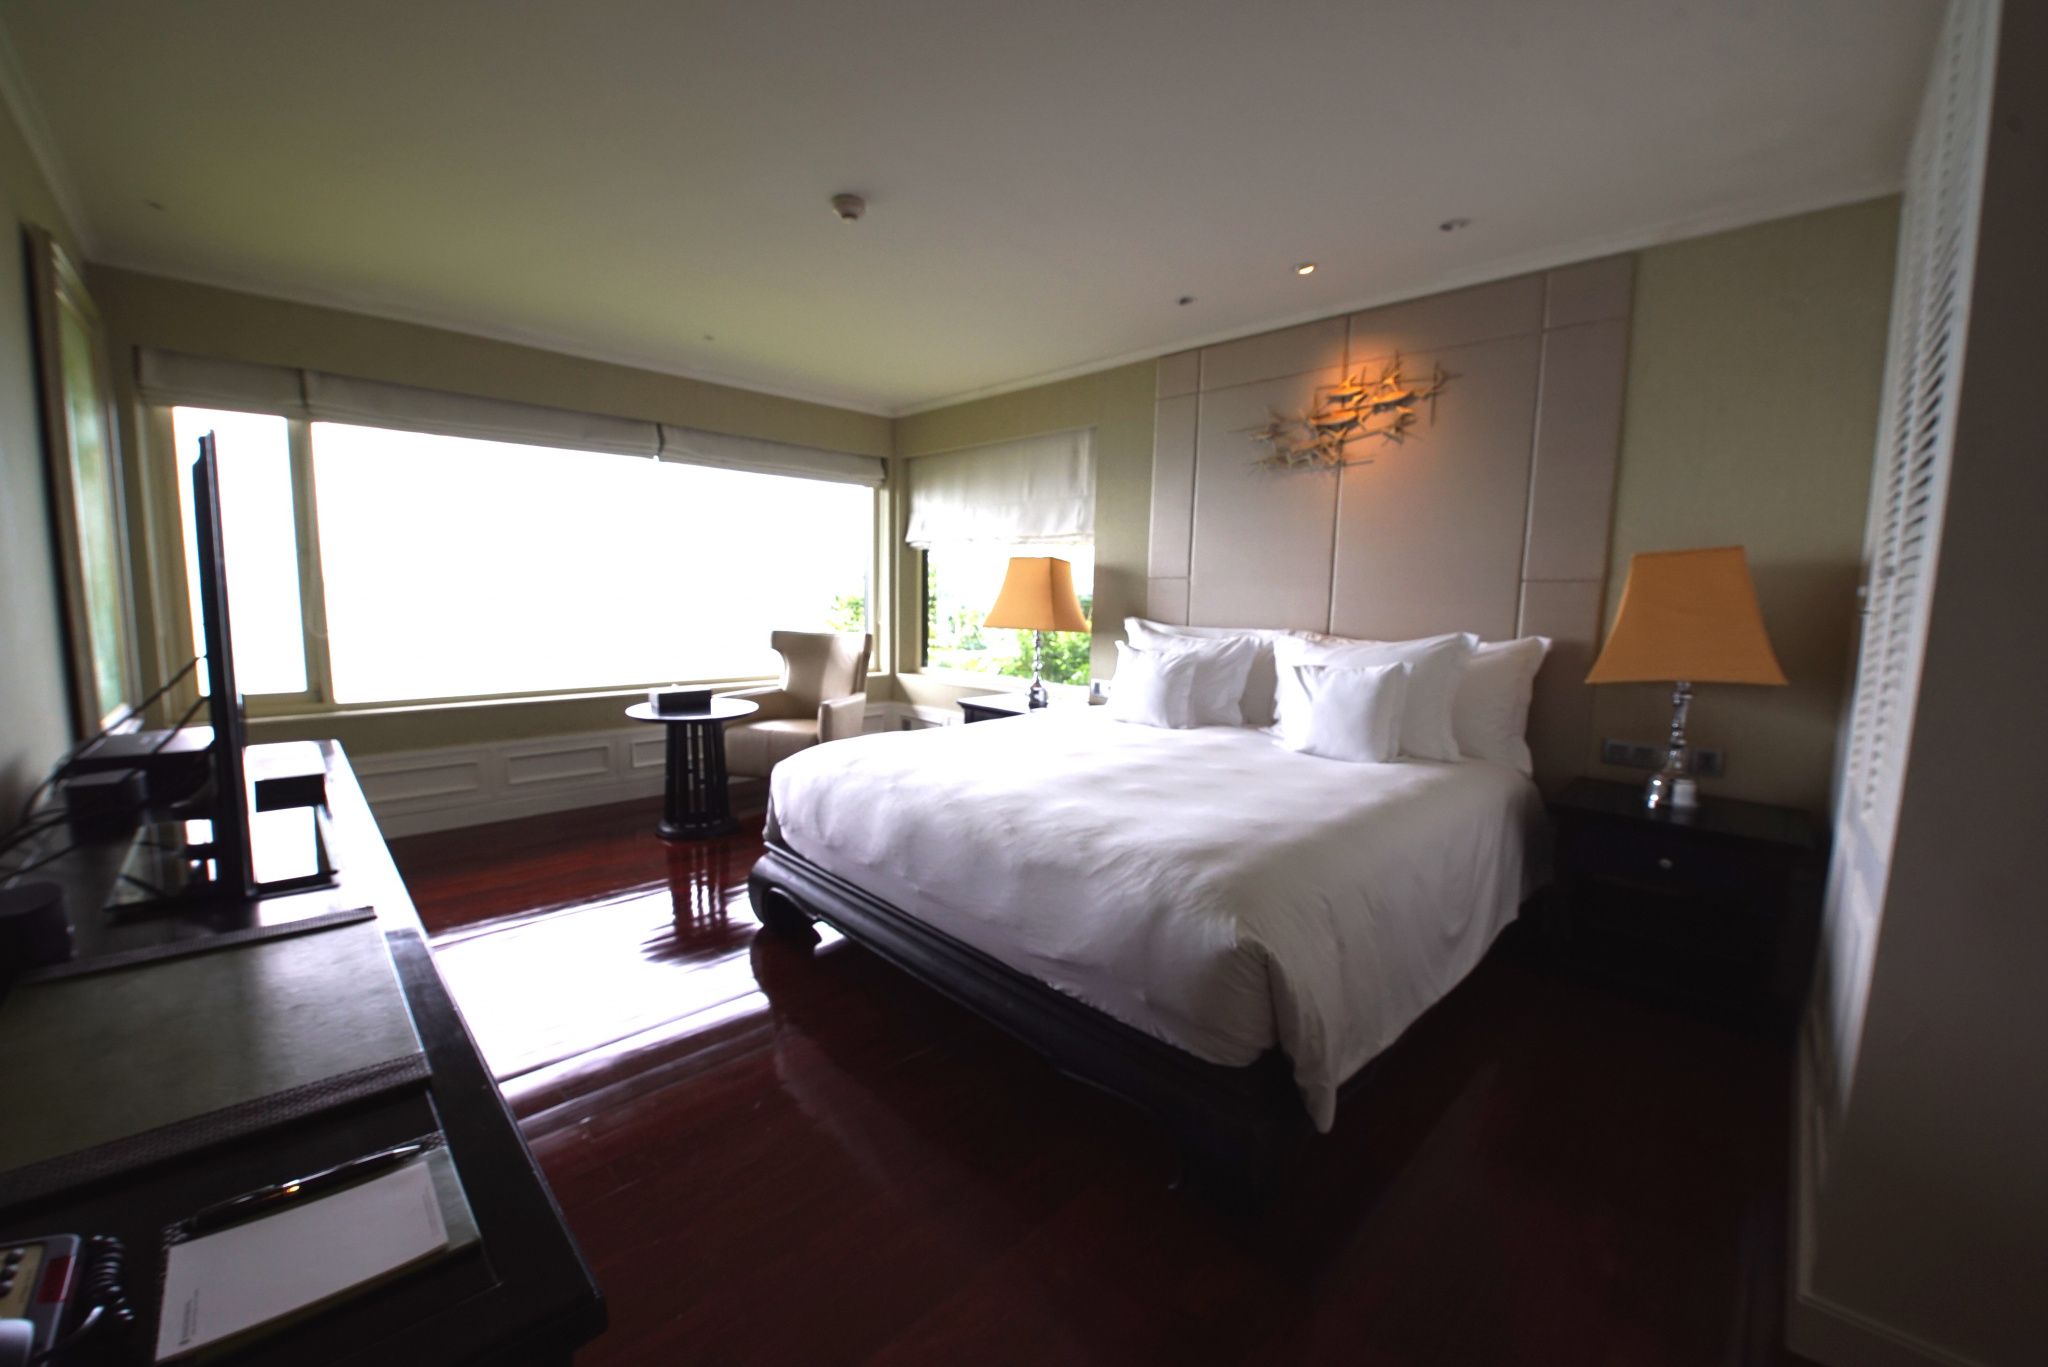  2 bedroom sea view Villa in Intercontinental Resort:  2 Bedroom Sea View Villa In Intercontinental Resort